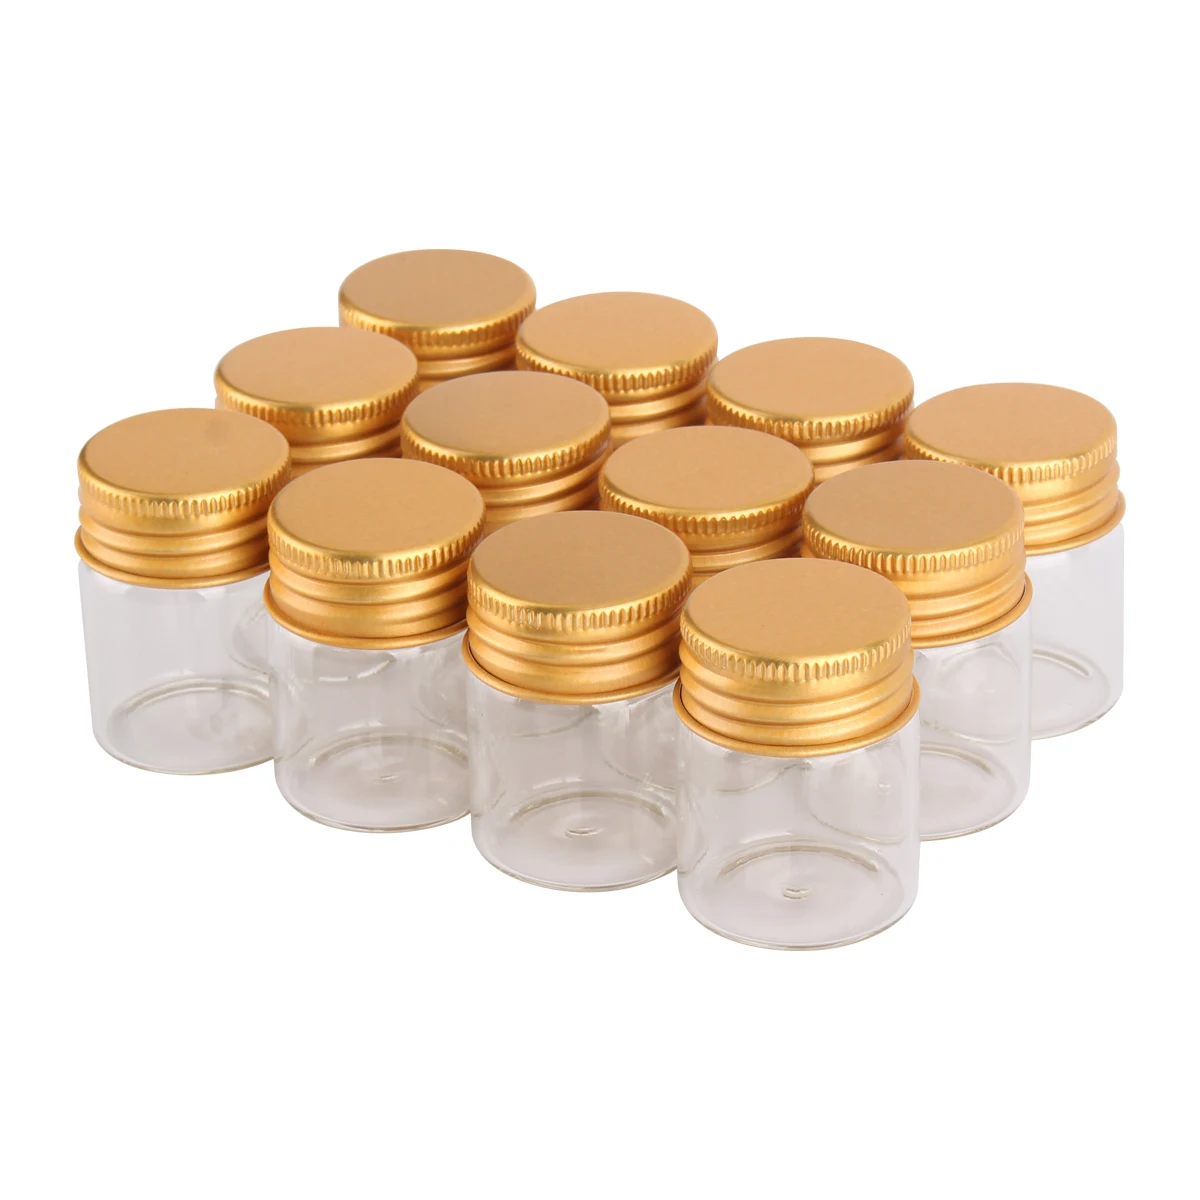 

12 шт. 15 мл 30x40 мм прозрачные стеклянные бутылки с золотыми алюминиевыми крышками, мини-банки для желаний, свадебные сувениры